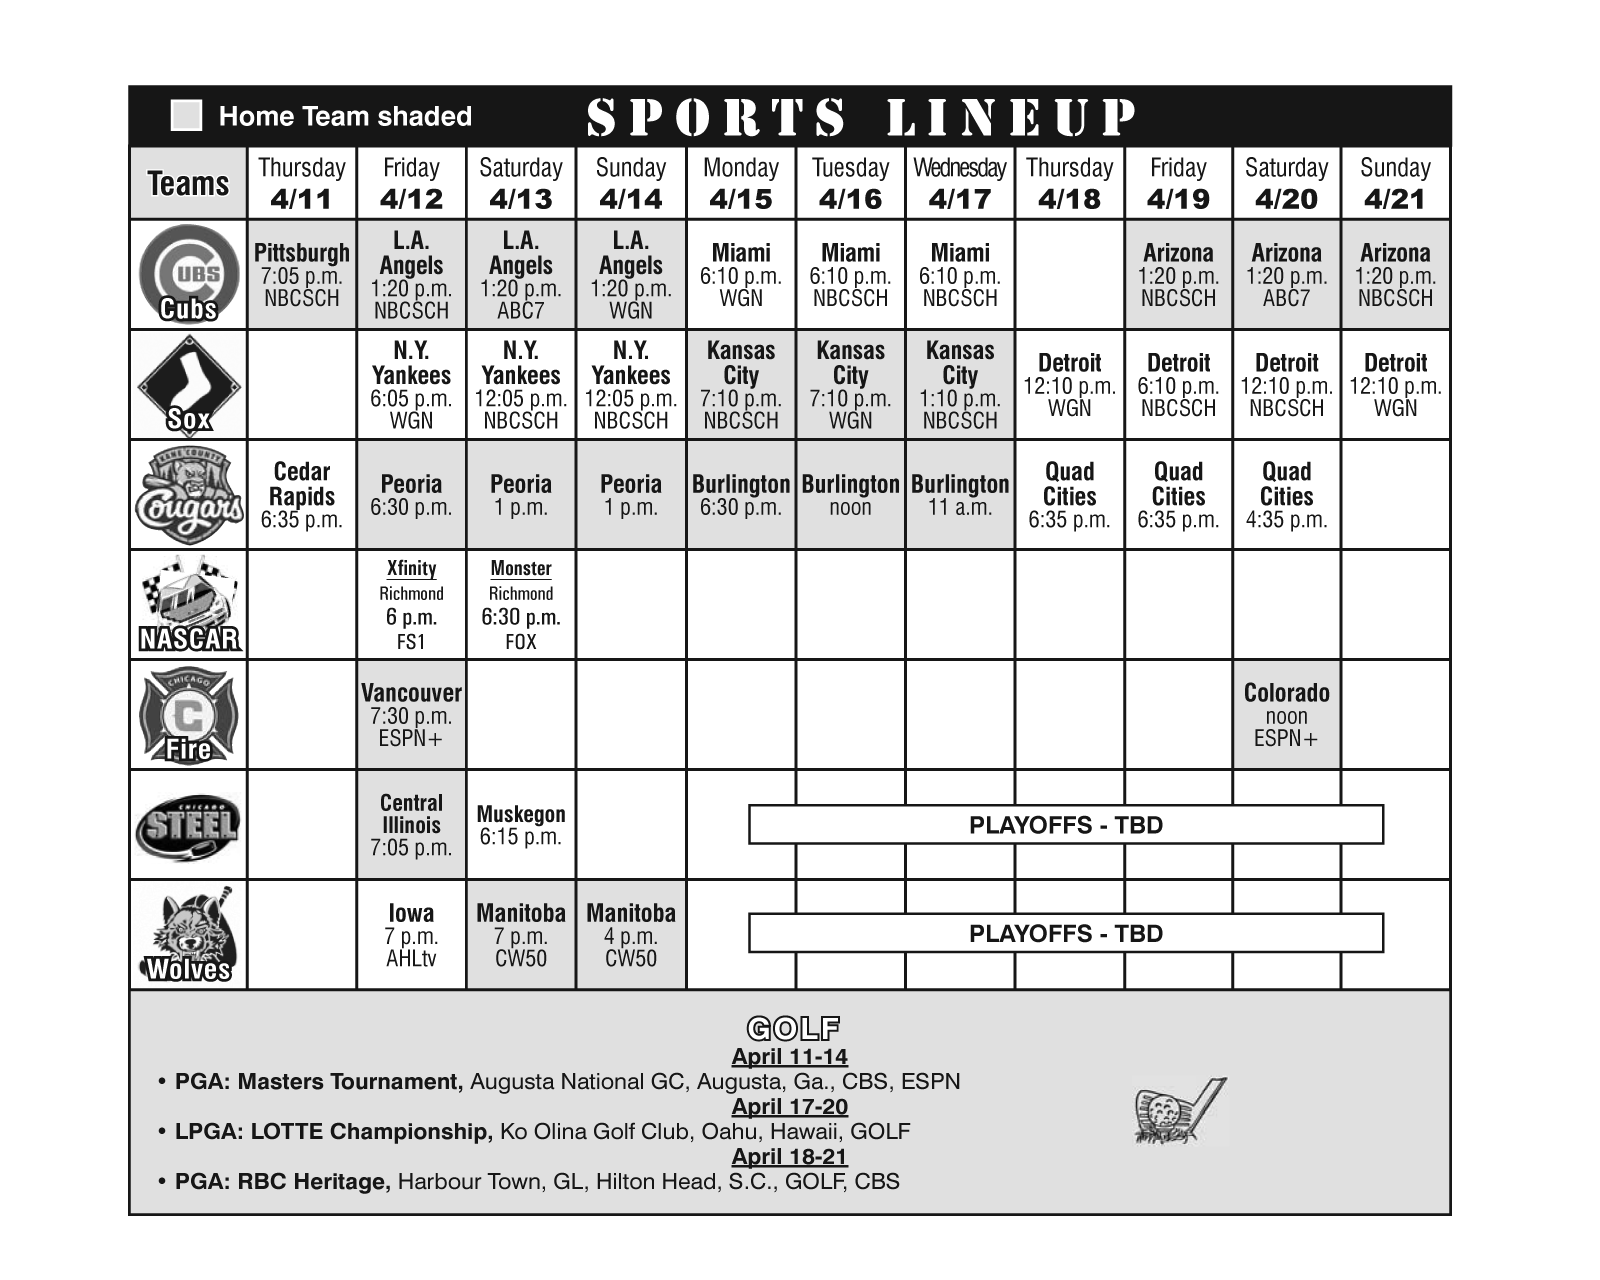 Sports Lineup April 11, 2019 through April 21, 2019